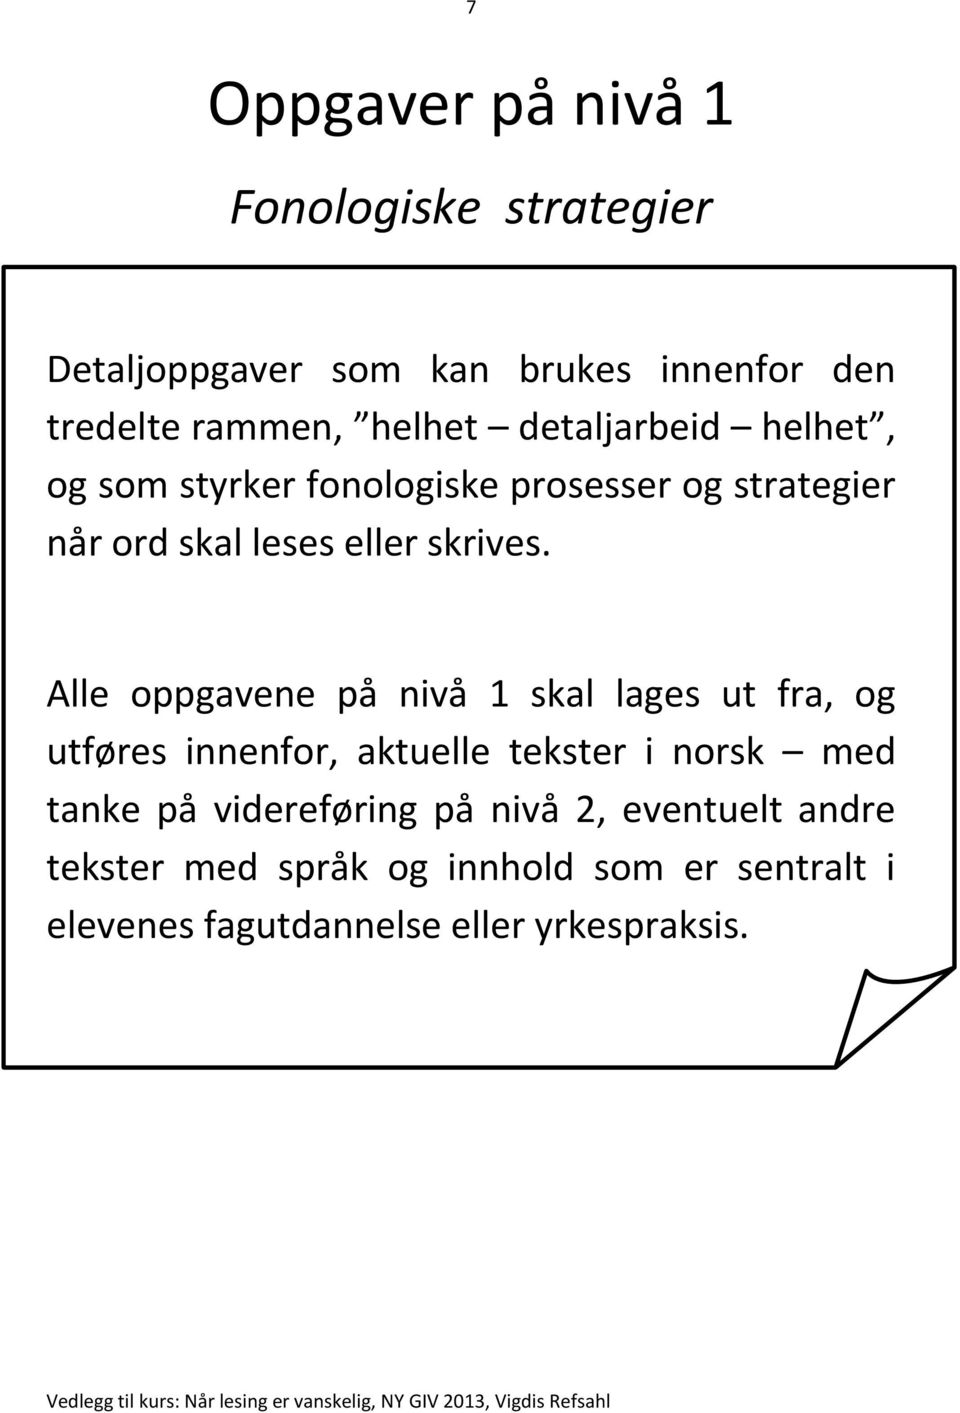 Alle oppgavene på nivå 1 skal lages ut fra, og utføres innenfor, aktuelle tekster i norsk med tanke på